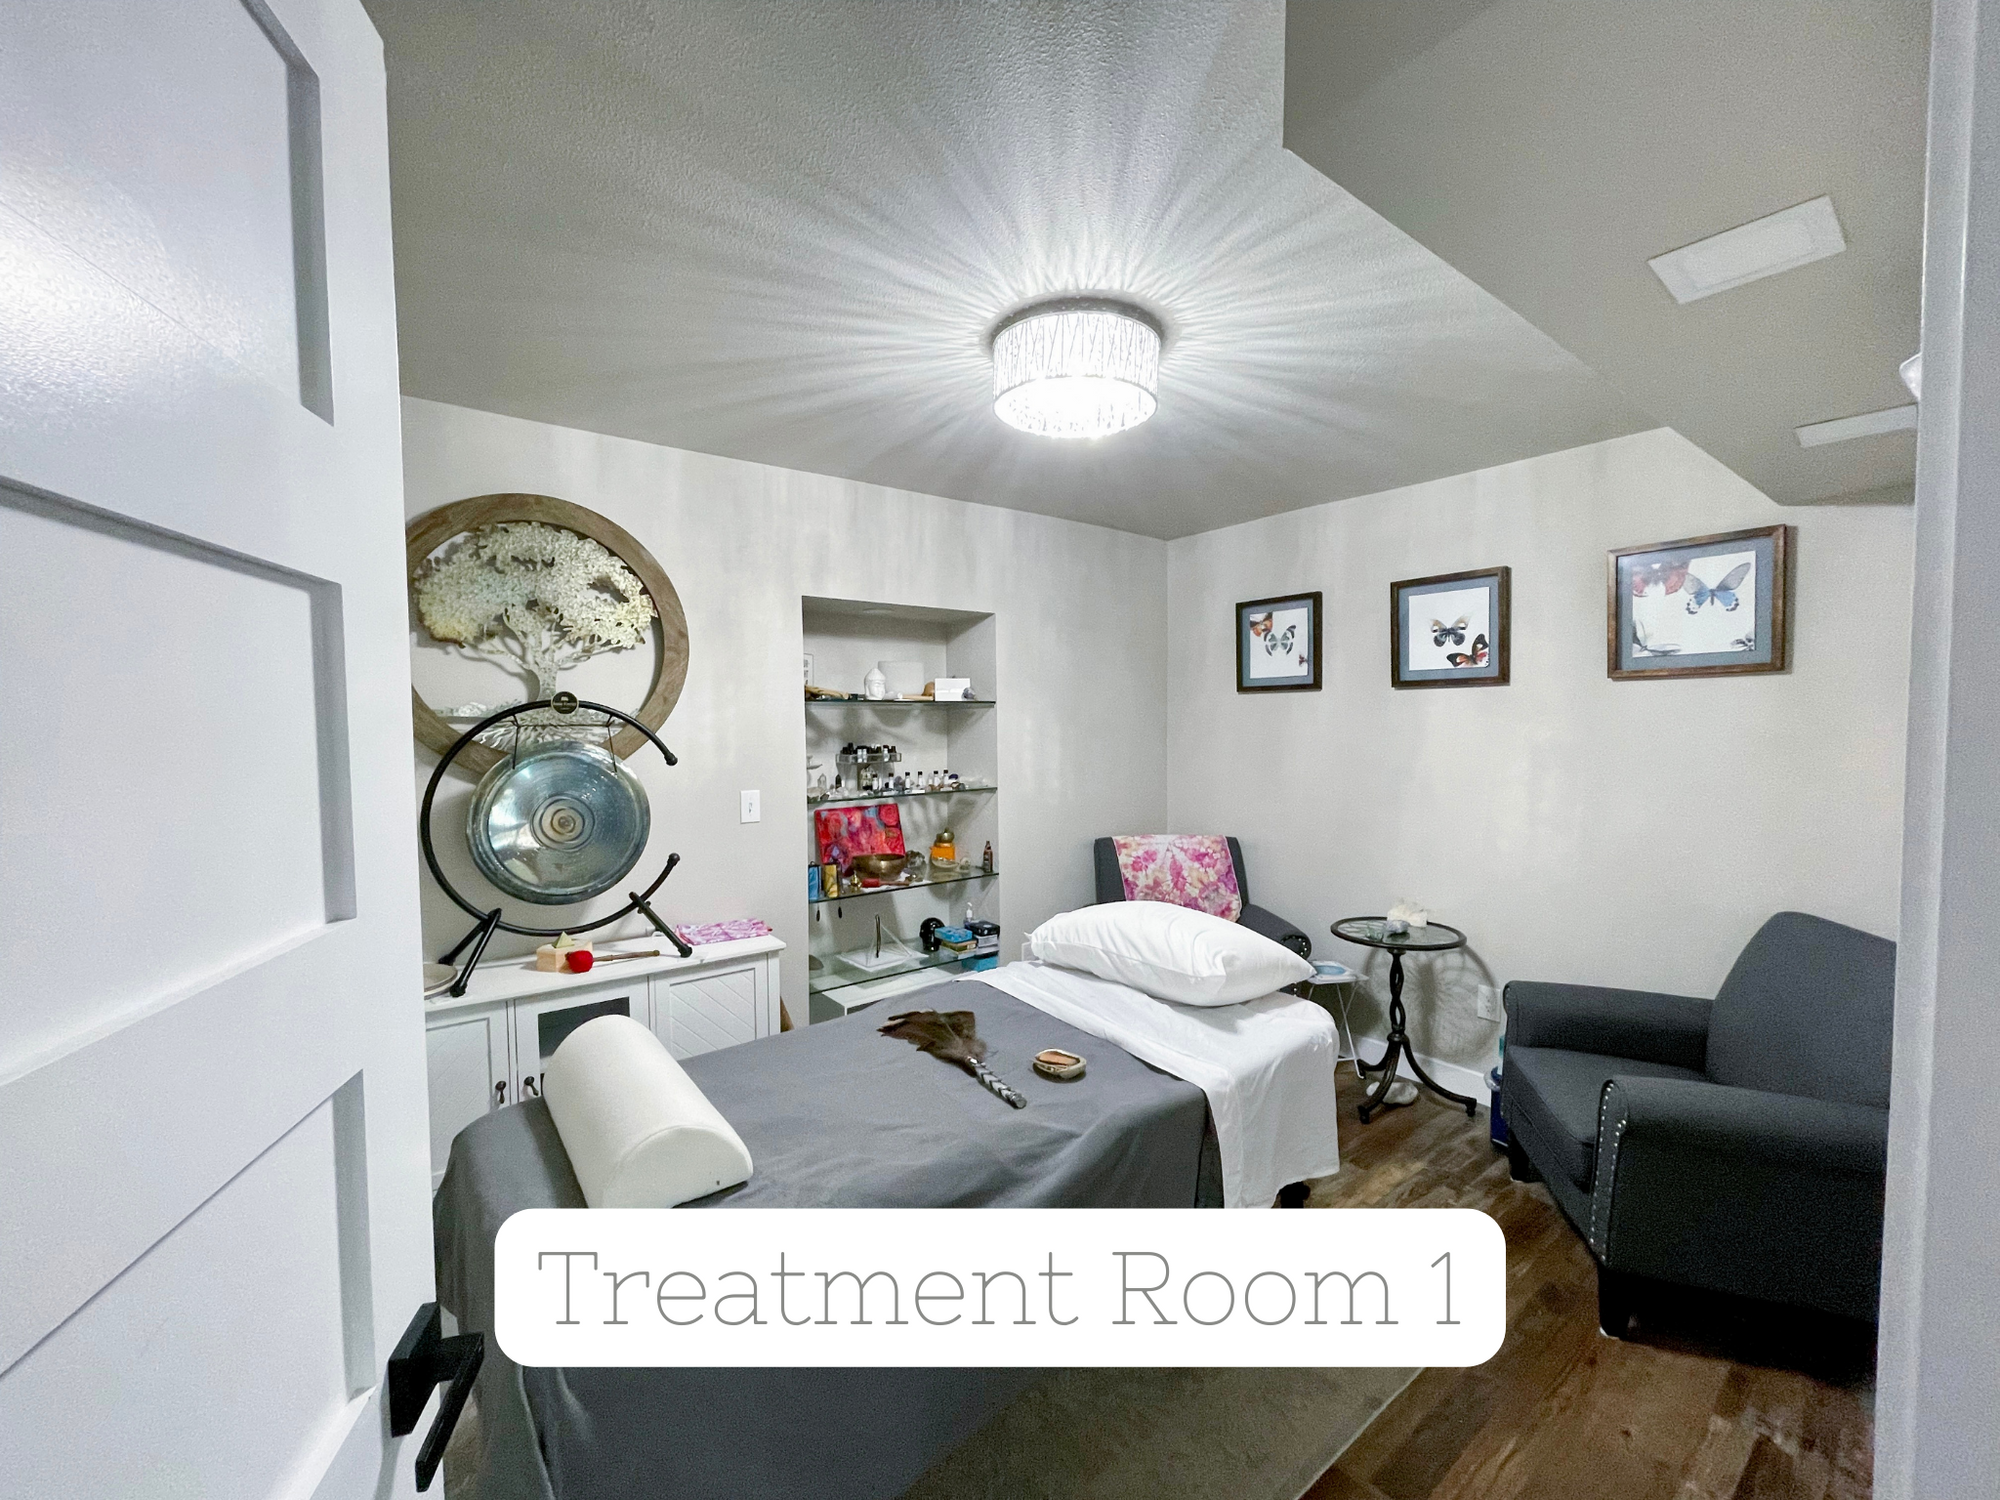 Weekend Treatment Room Rental